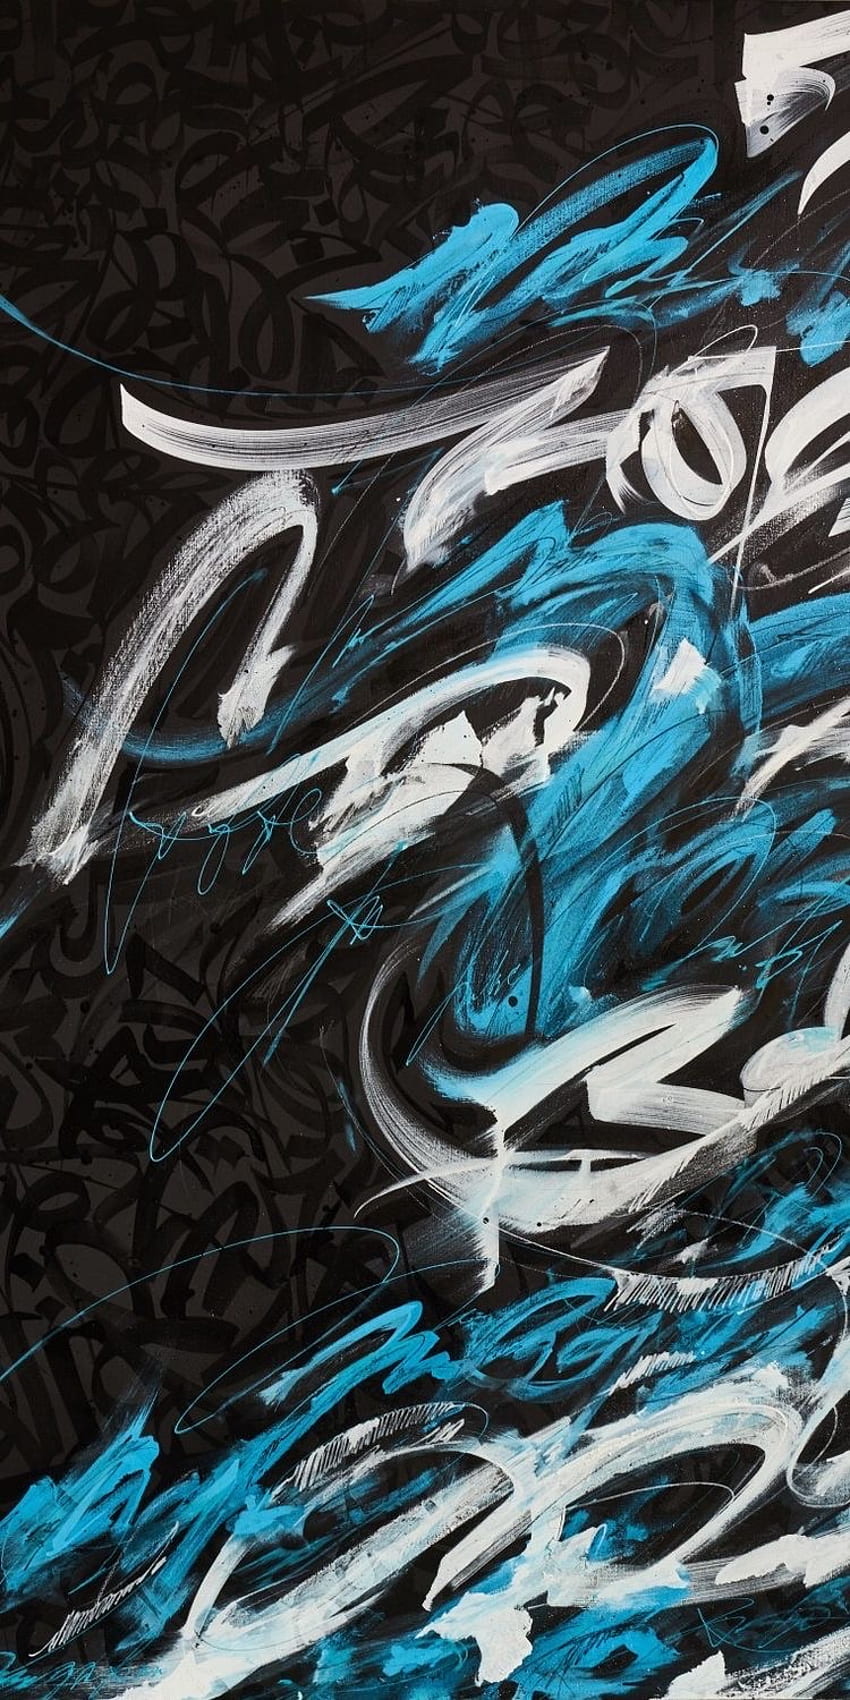 Graffiti Wallpaper  VoBss